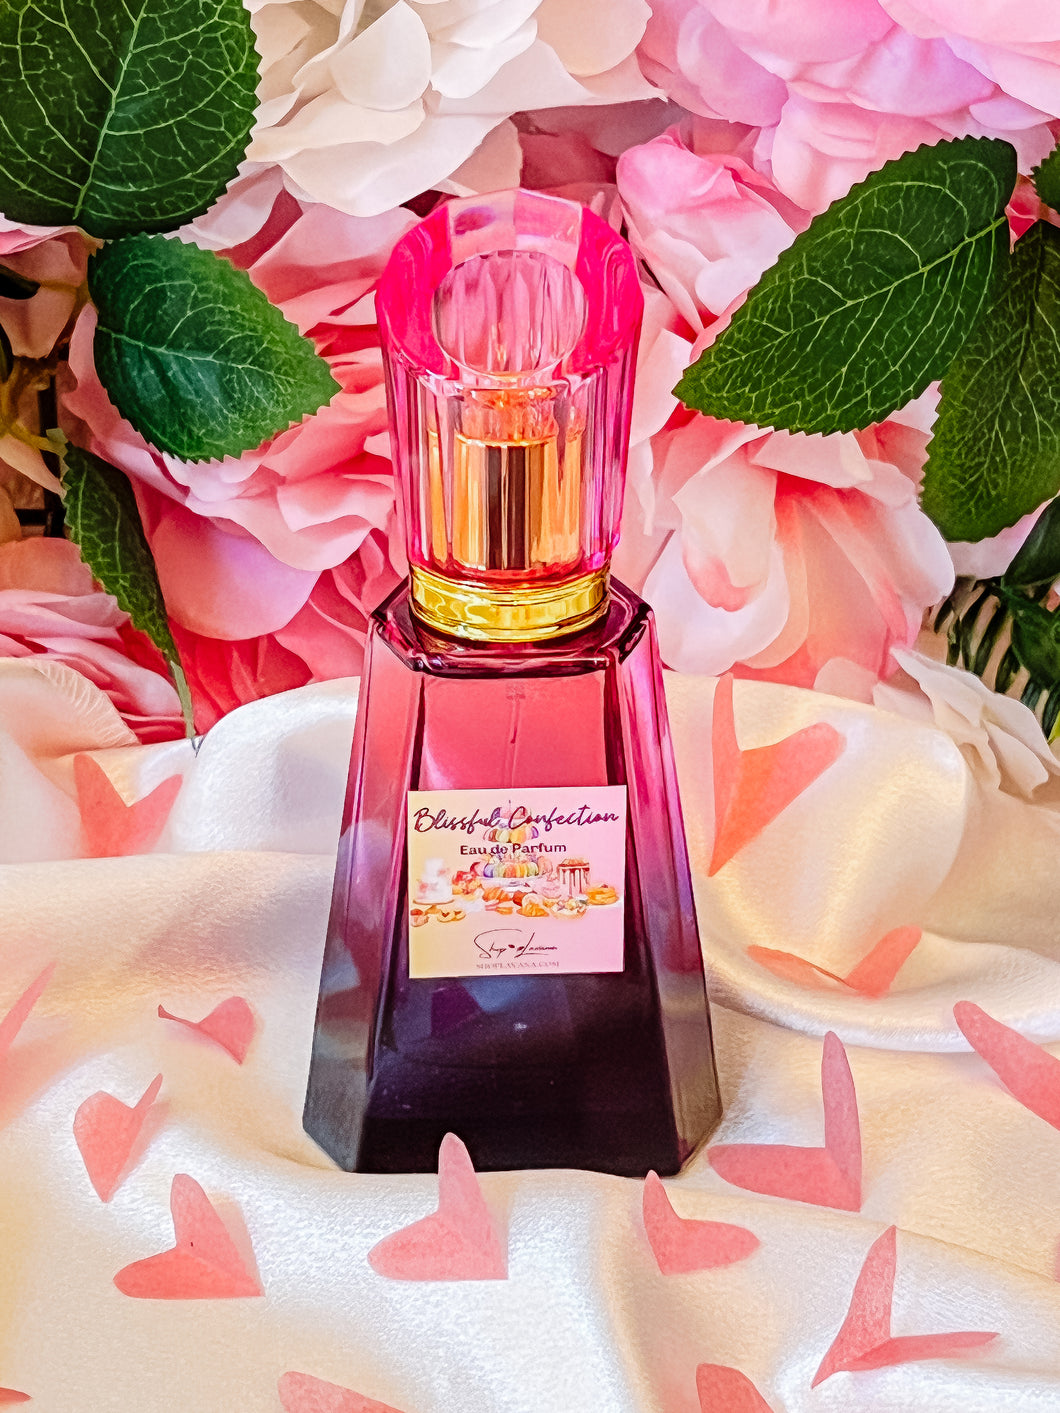 * Blissful Confection Limited Edition Eau de Parfum